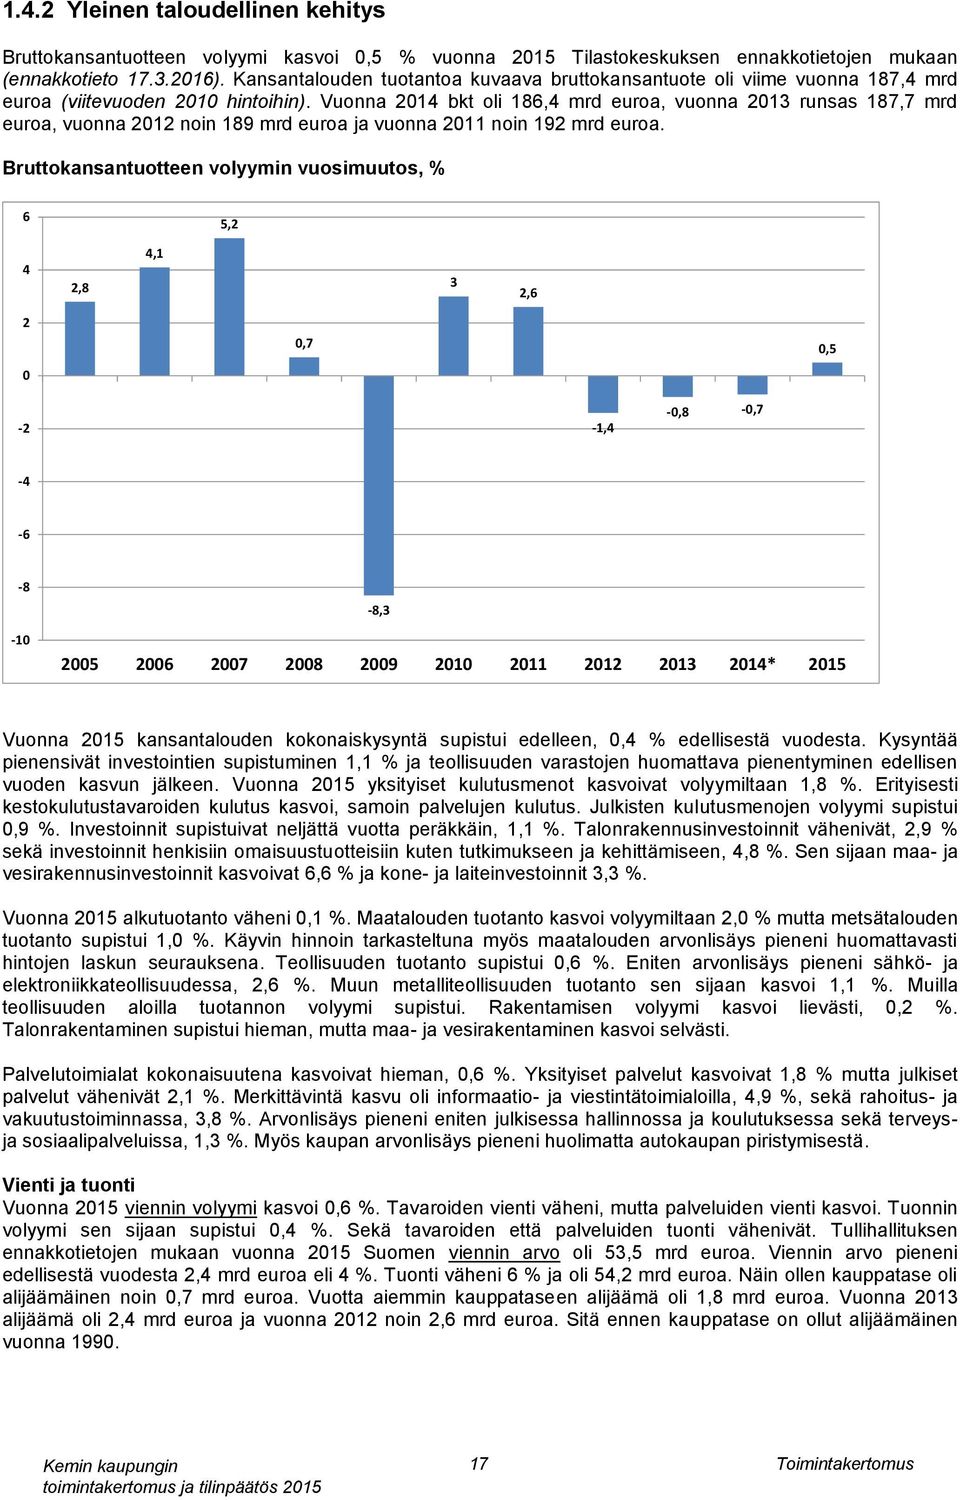 Vuonna 2014 bkt oli 186,4 mrd euroa, vuonna 2013 runsas 187,7 mrd euroa, vuonna 2012 noin 189 mrd euroa ja vuonna 2011 noin 192 mrd euroa.